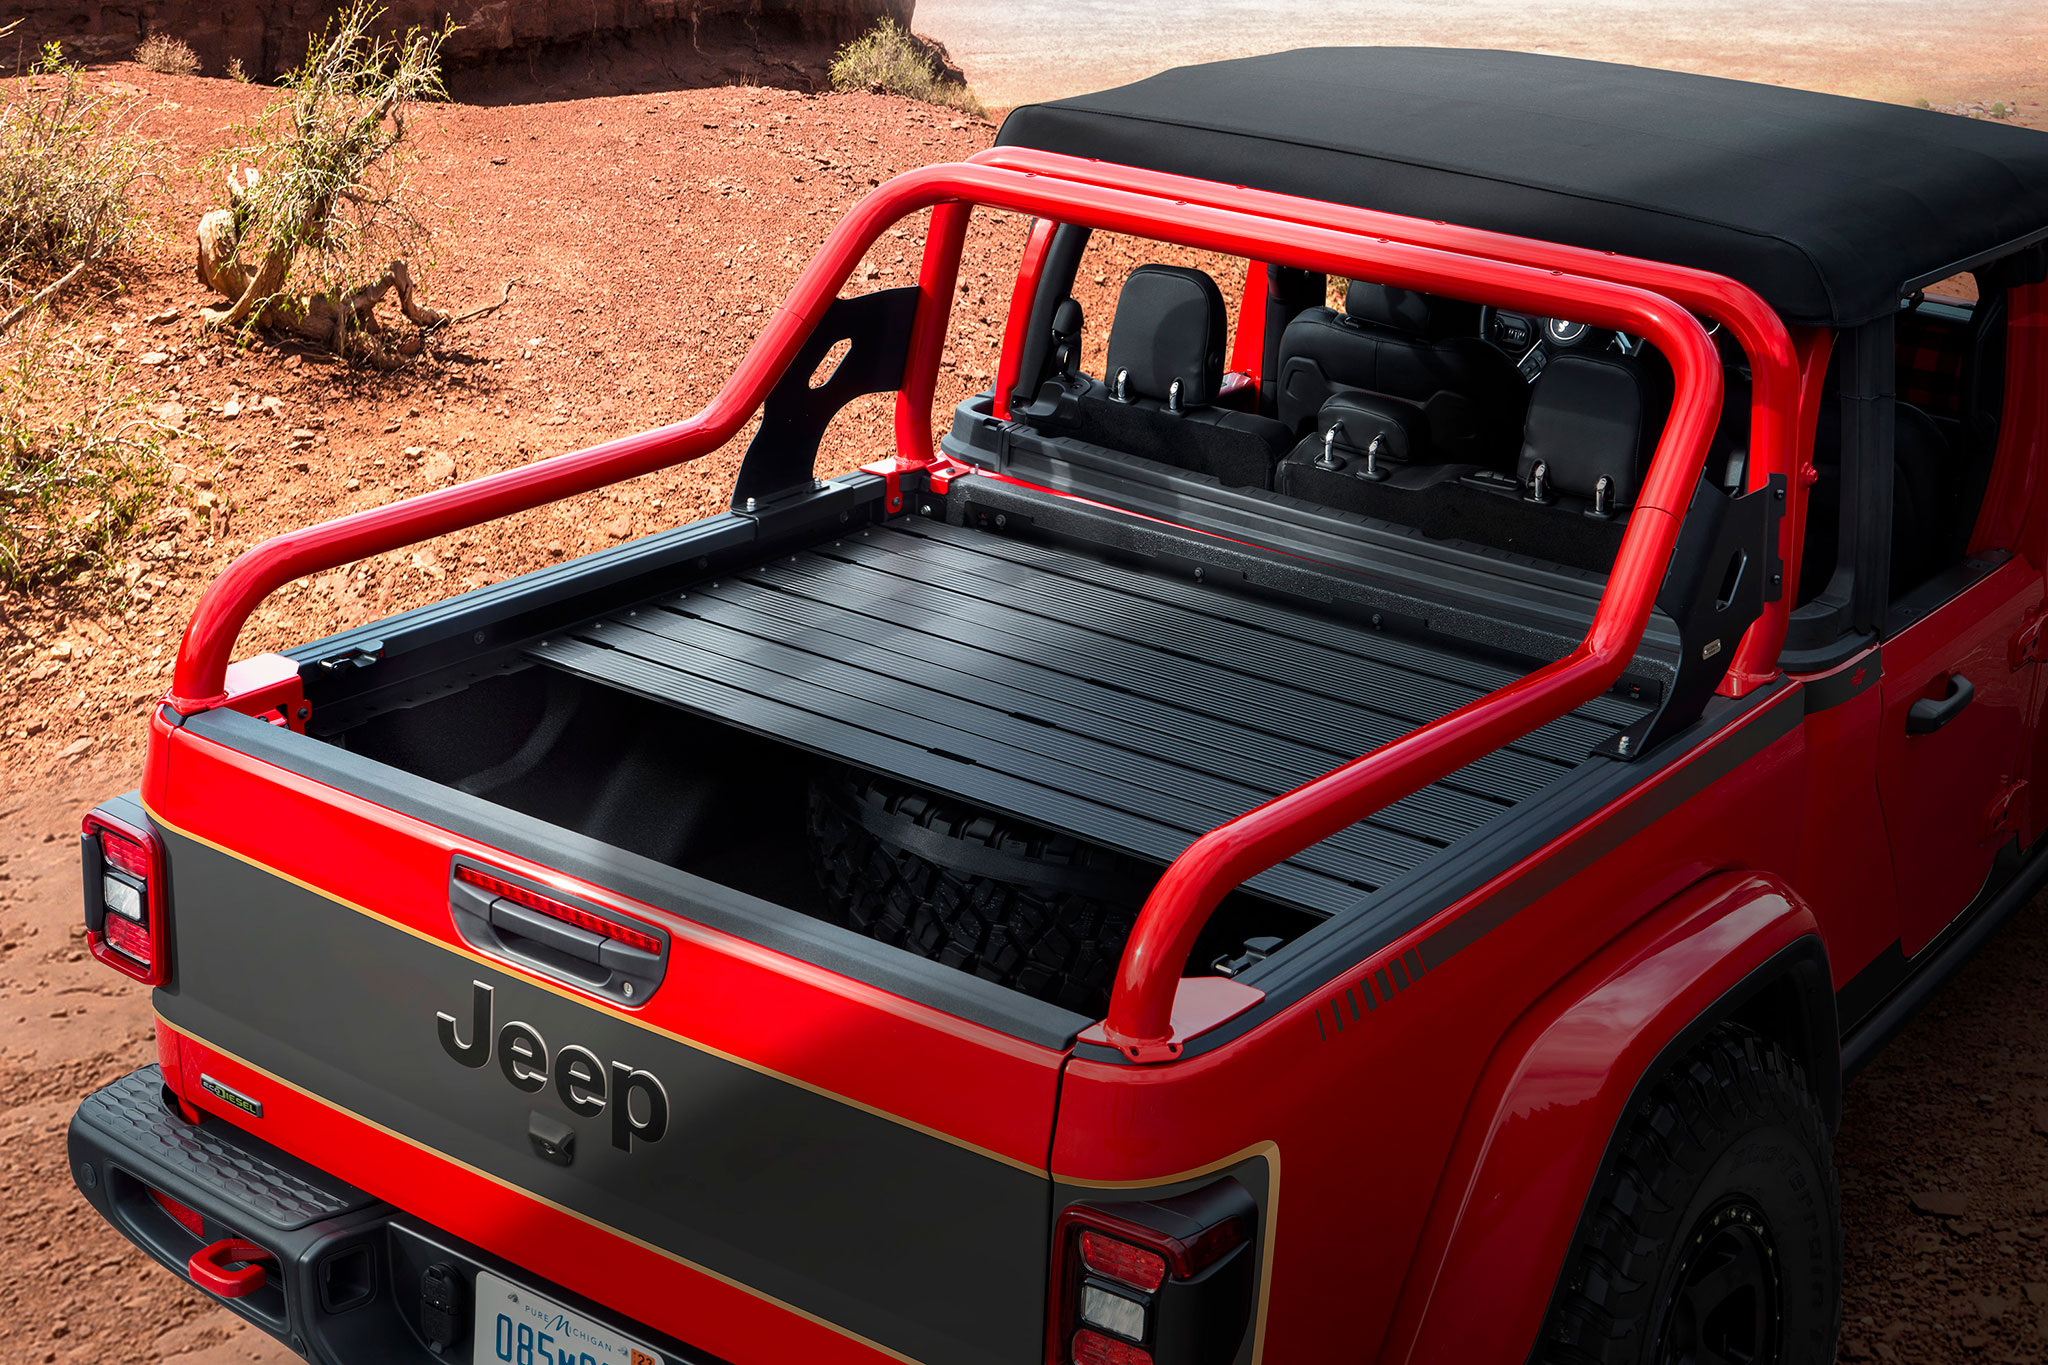 2021 Jeep Red Bare Gladiator Rubicon Concept détail de la personnalisation de la benne - Concept Cars de Jeep®.